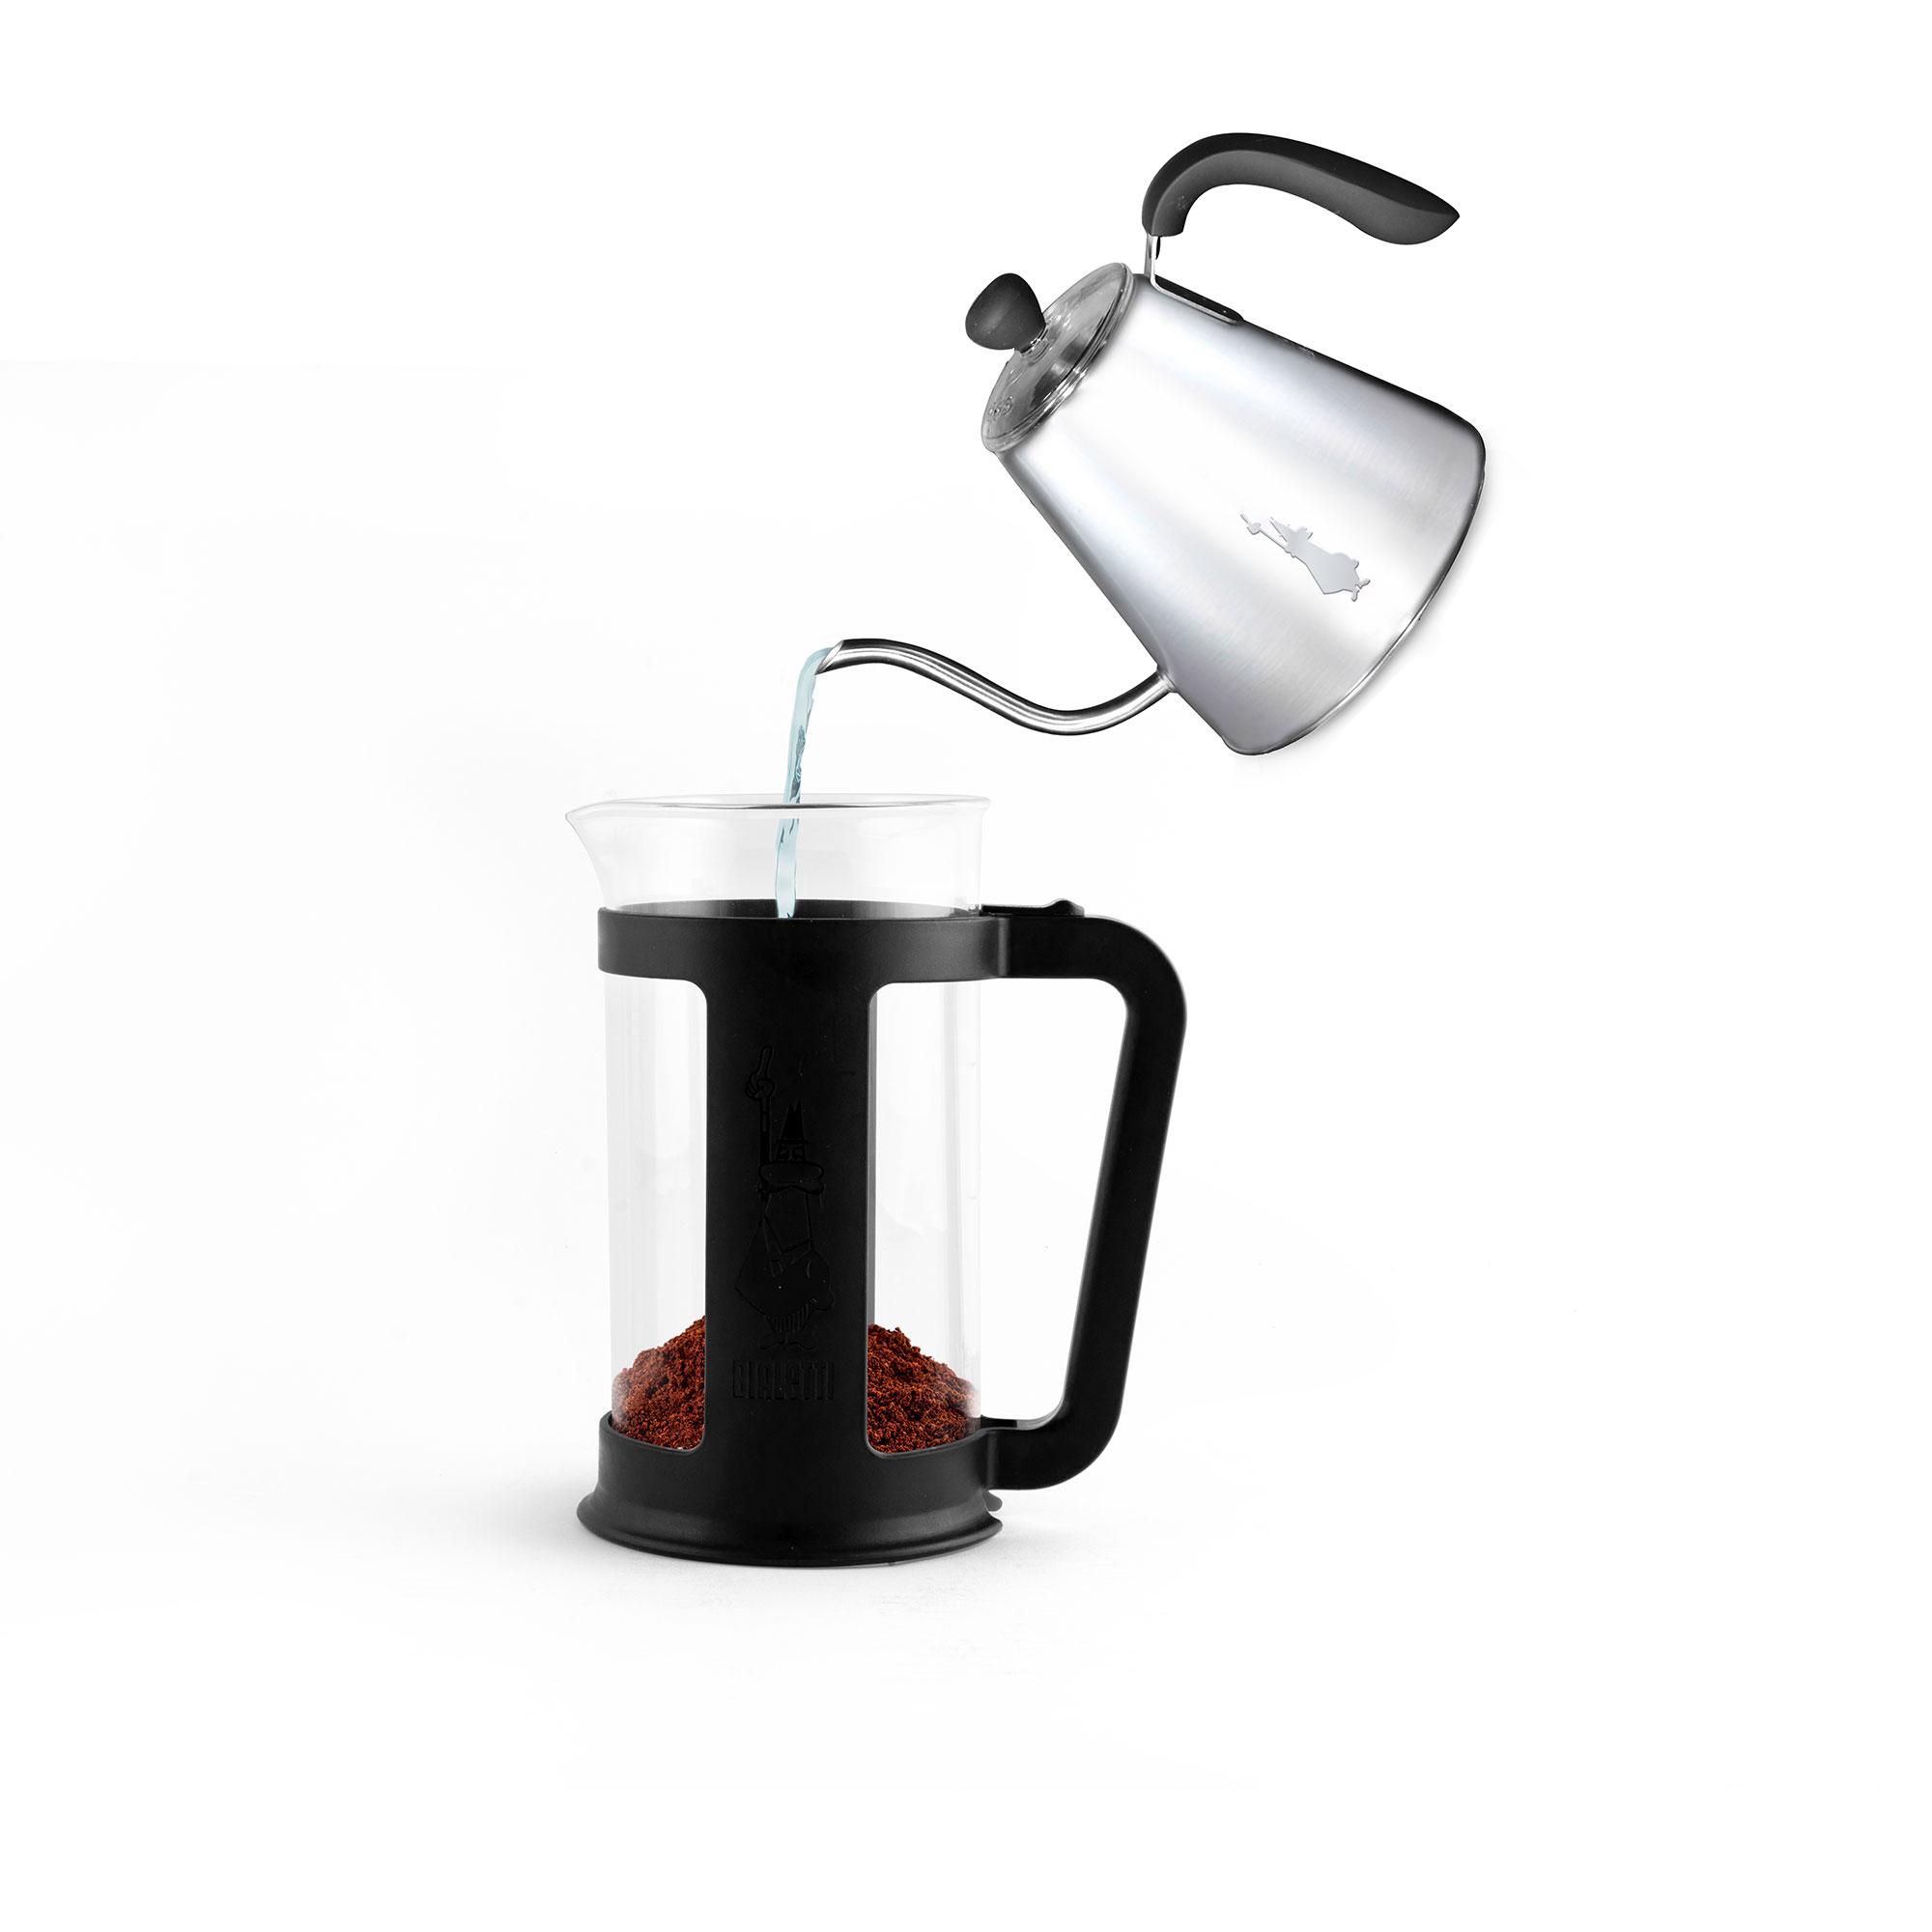 Bialetti Smart Coffee Press 1L Black Image 3